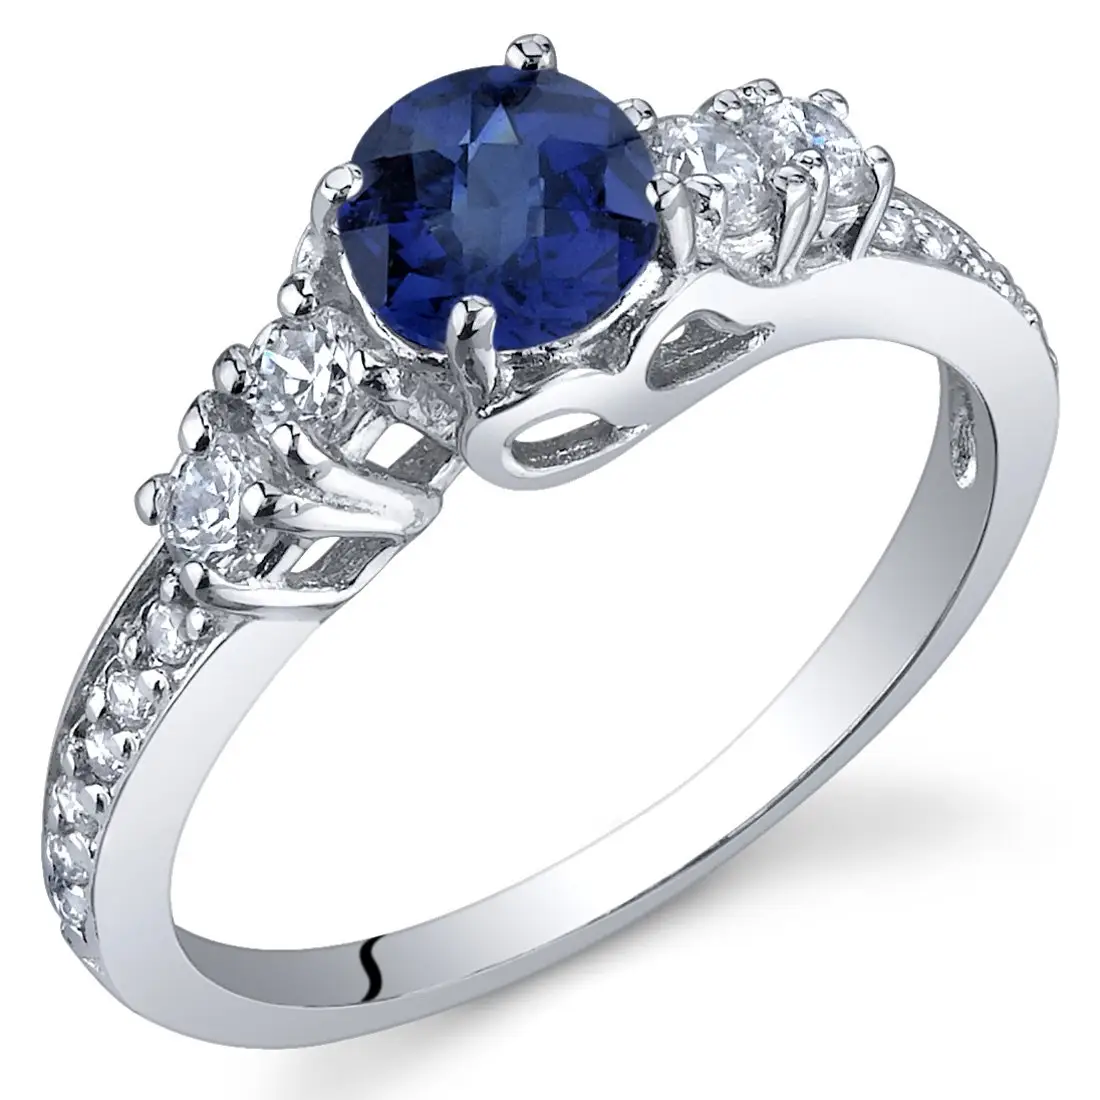 Criado Laboratório Anéis De Safira Anéis De Noivado De Pedra Azul Anéis De Safira E Diamante